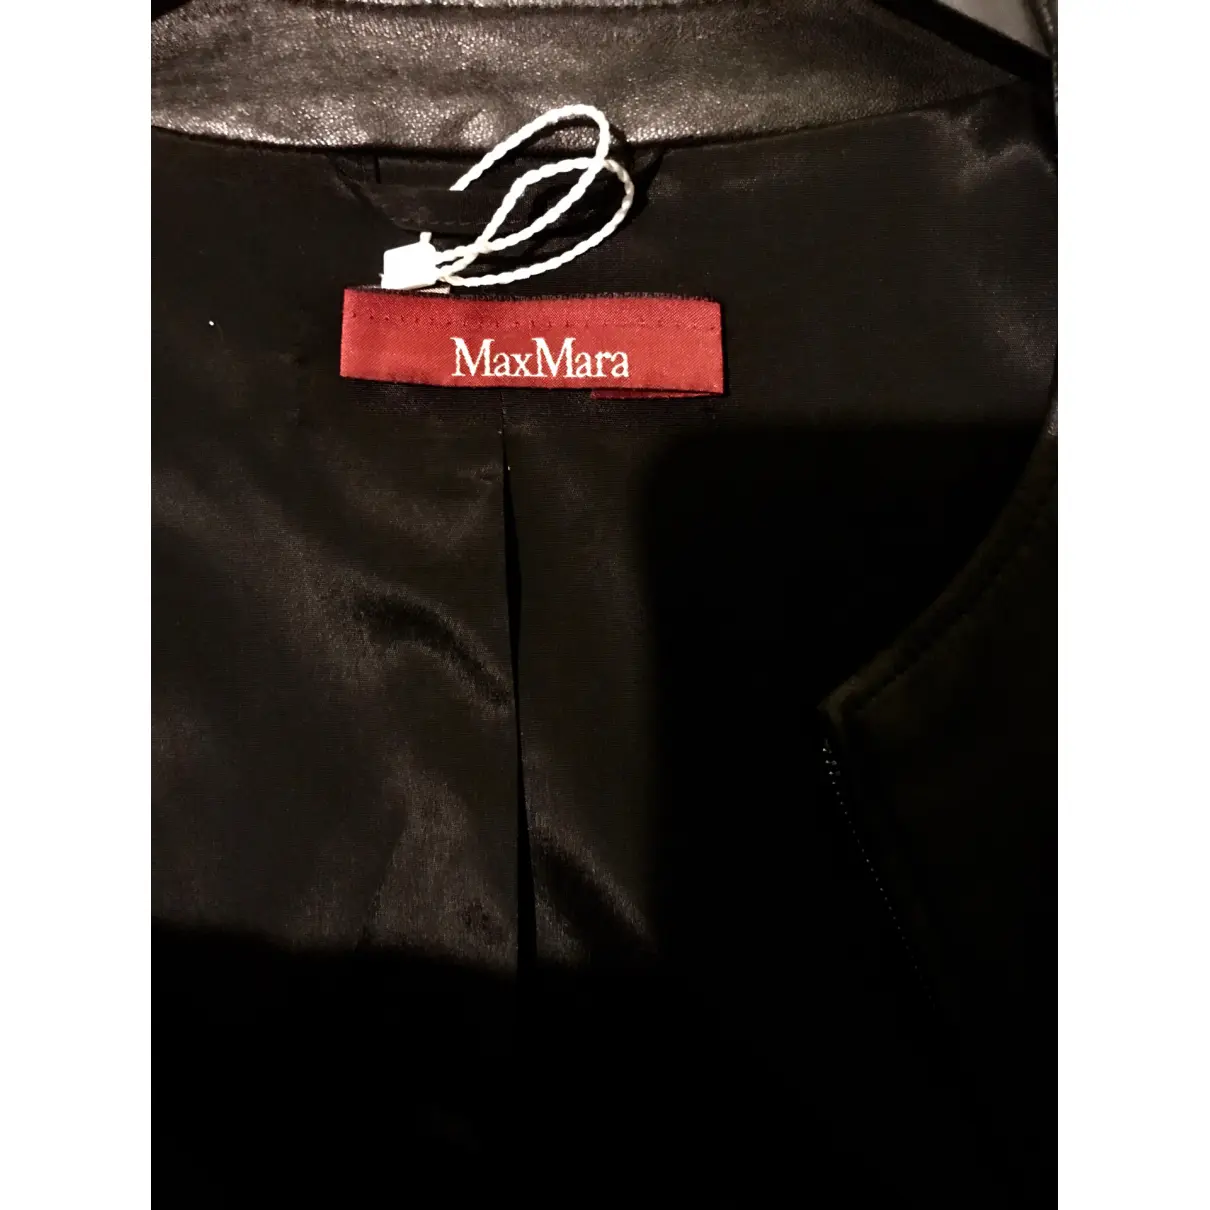 Leather biker jacket Max Mara